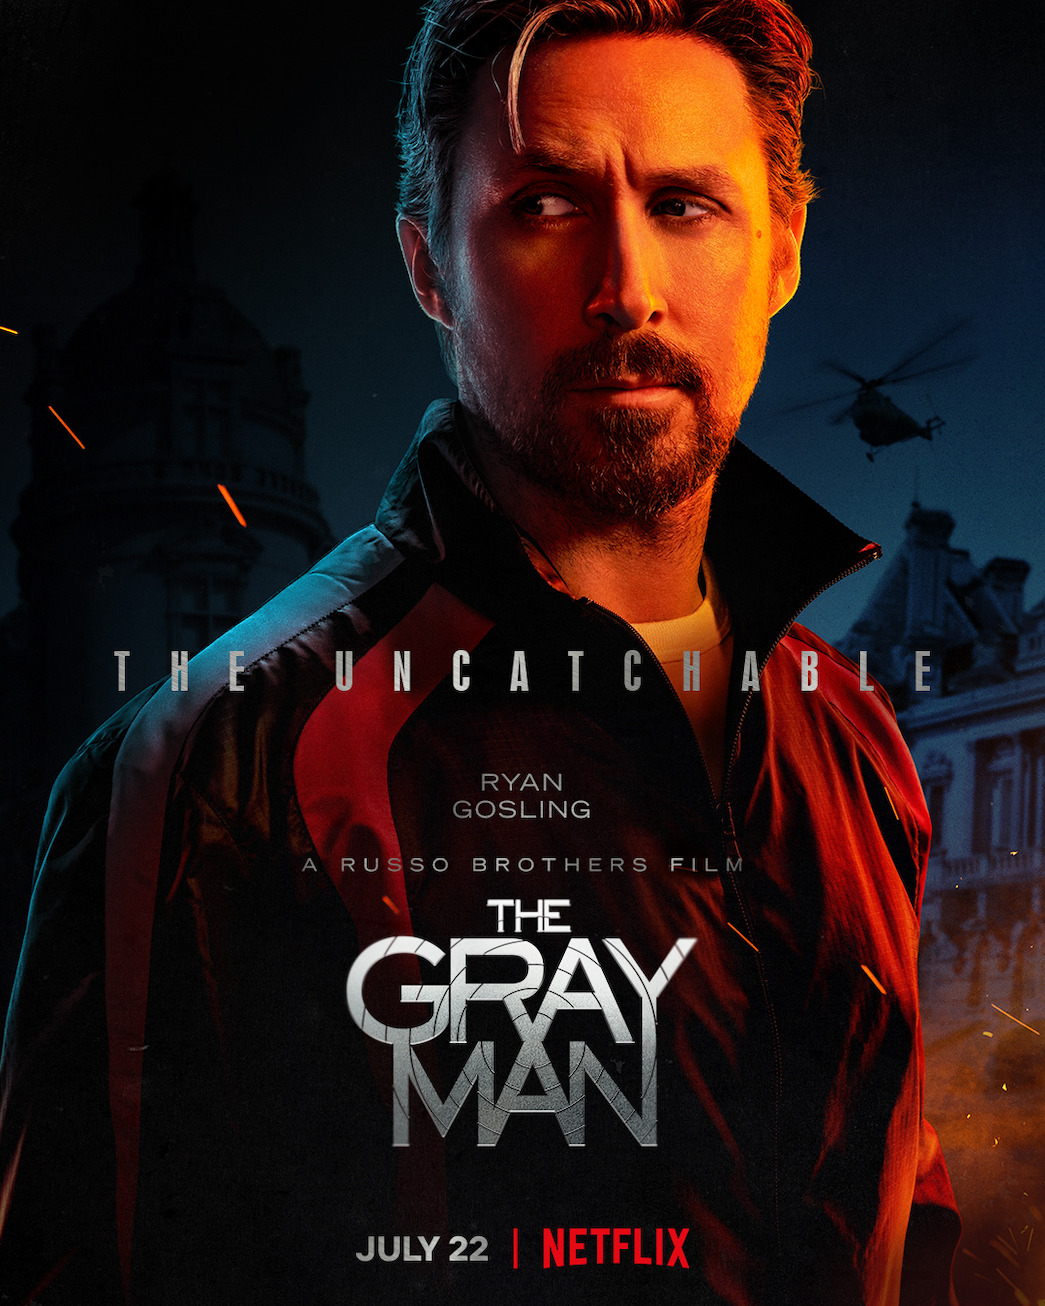 O filme The grey man chega ao metaverso